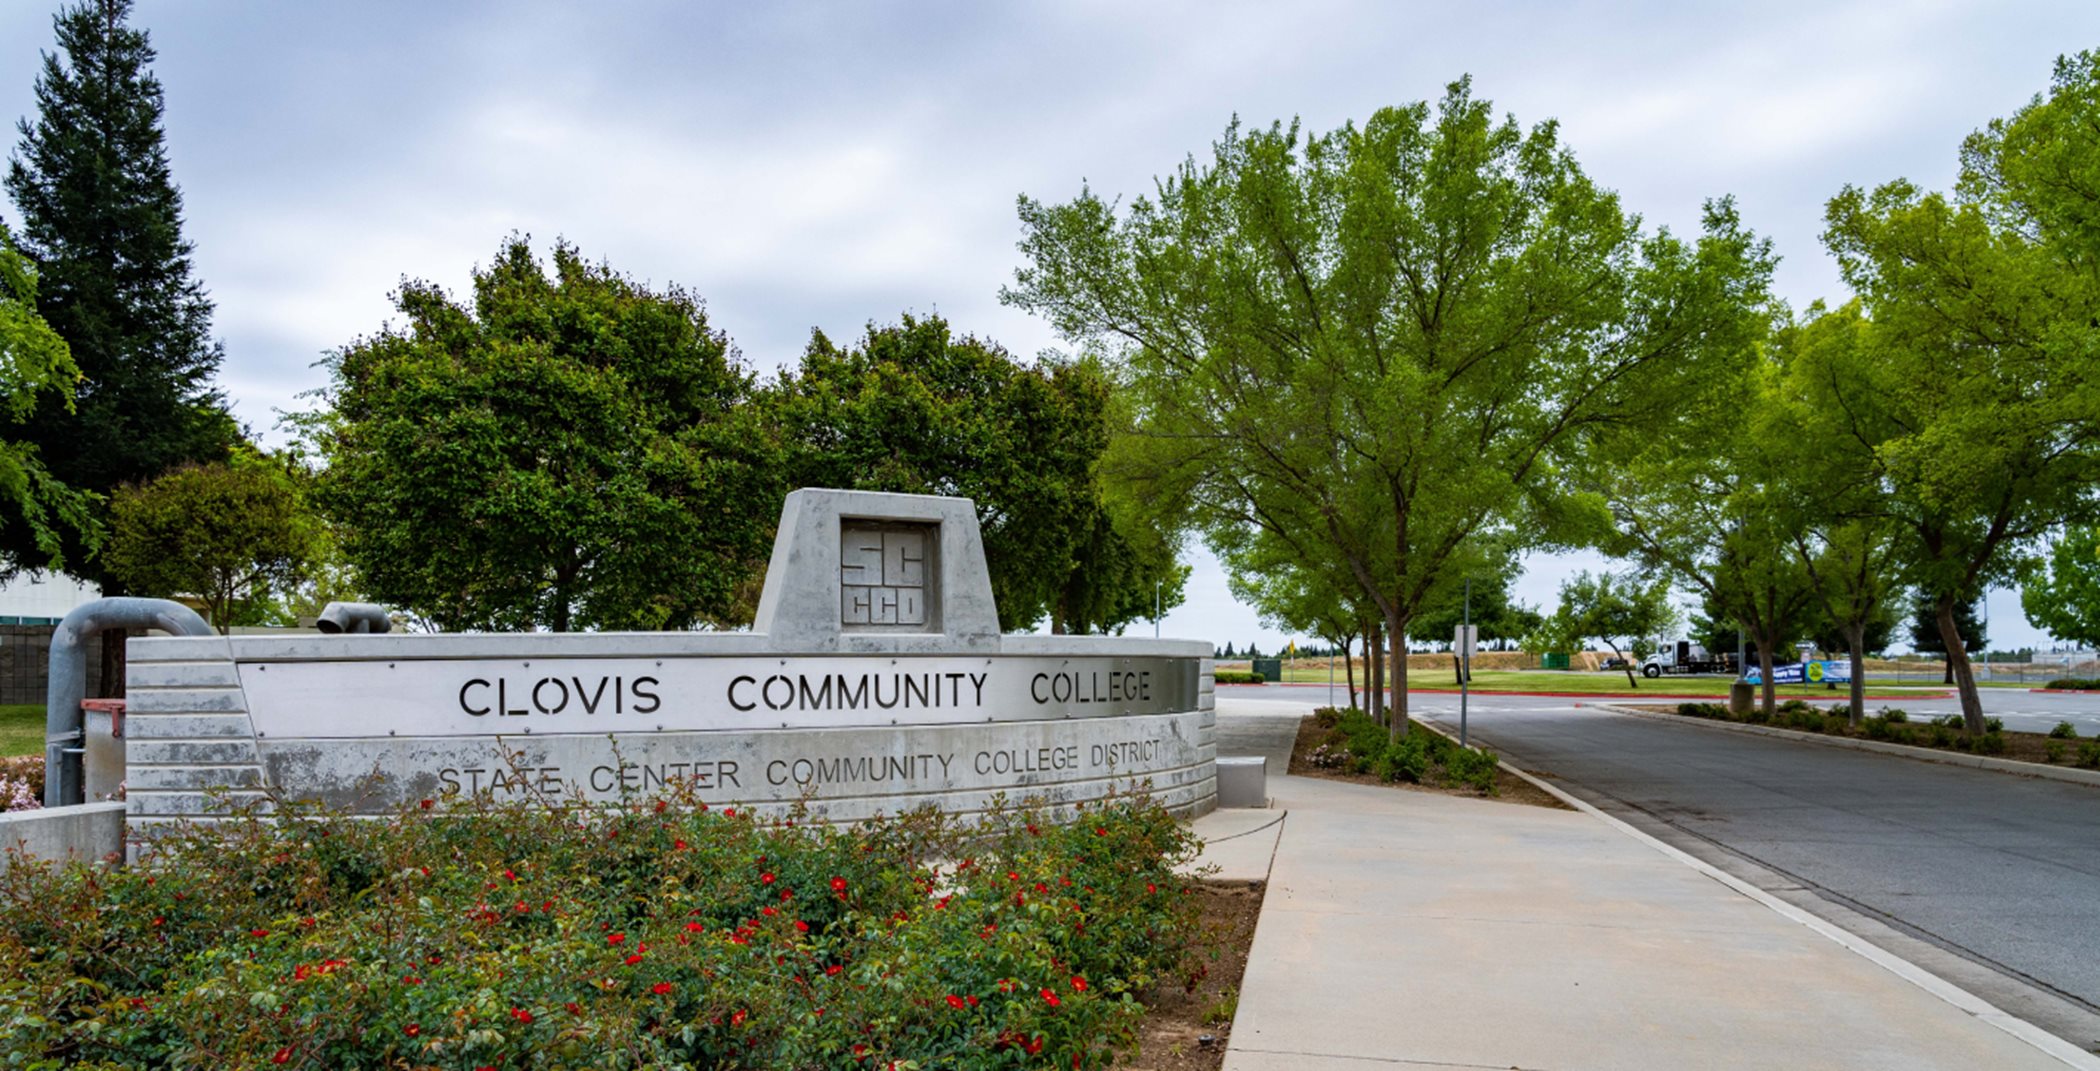 Clovis Community College monument sign exterior